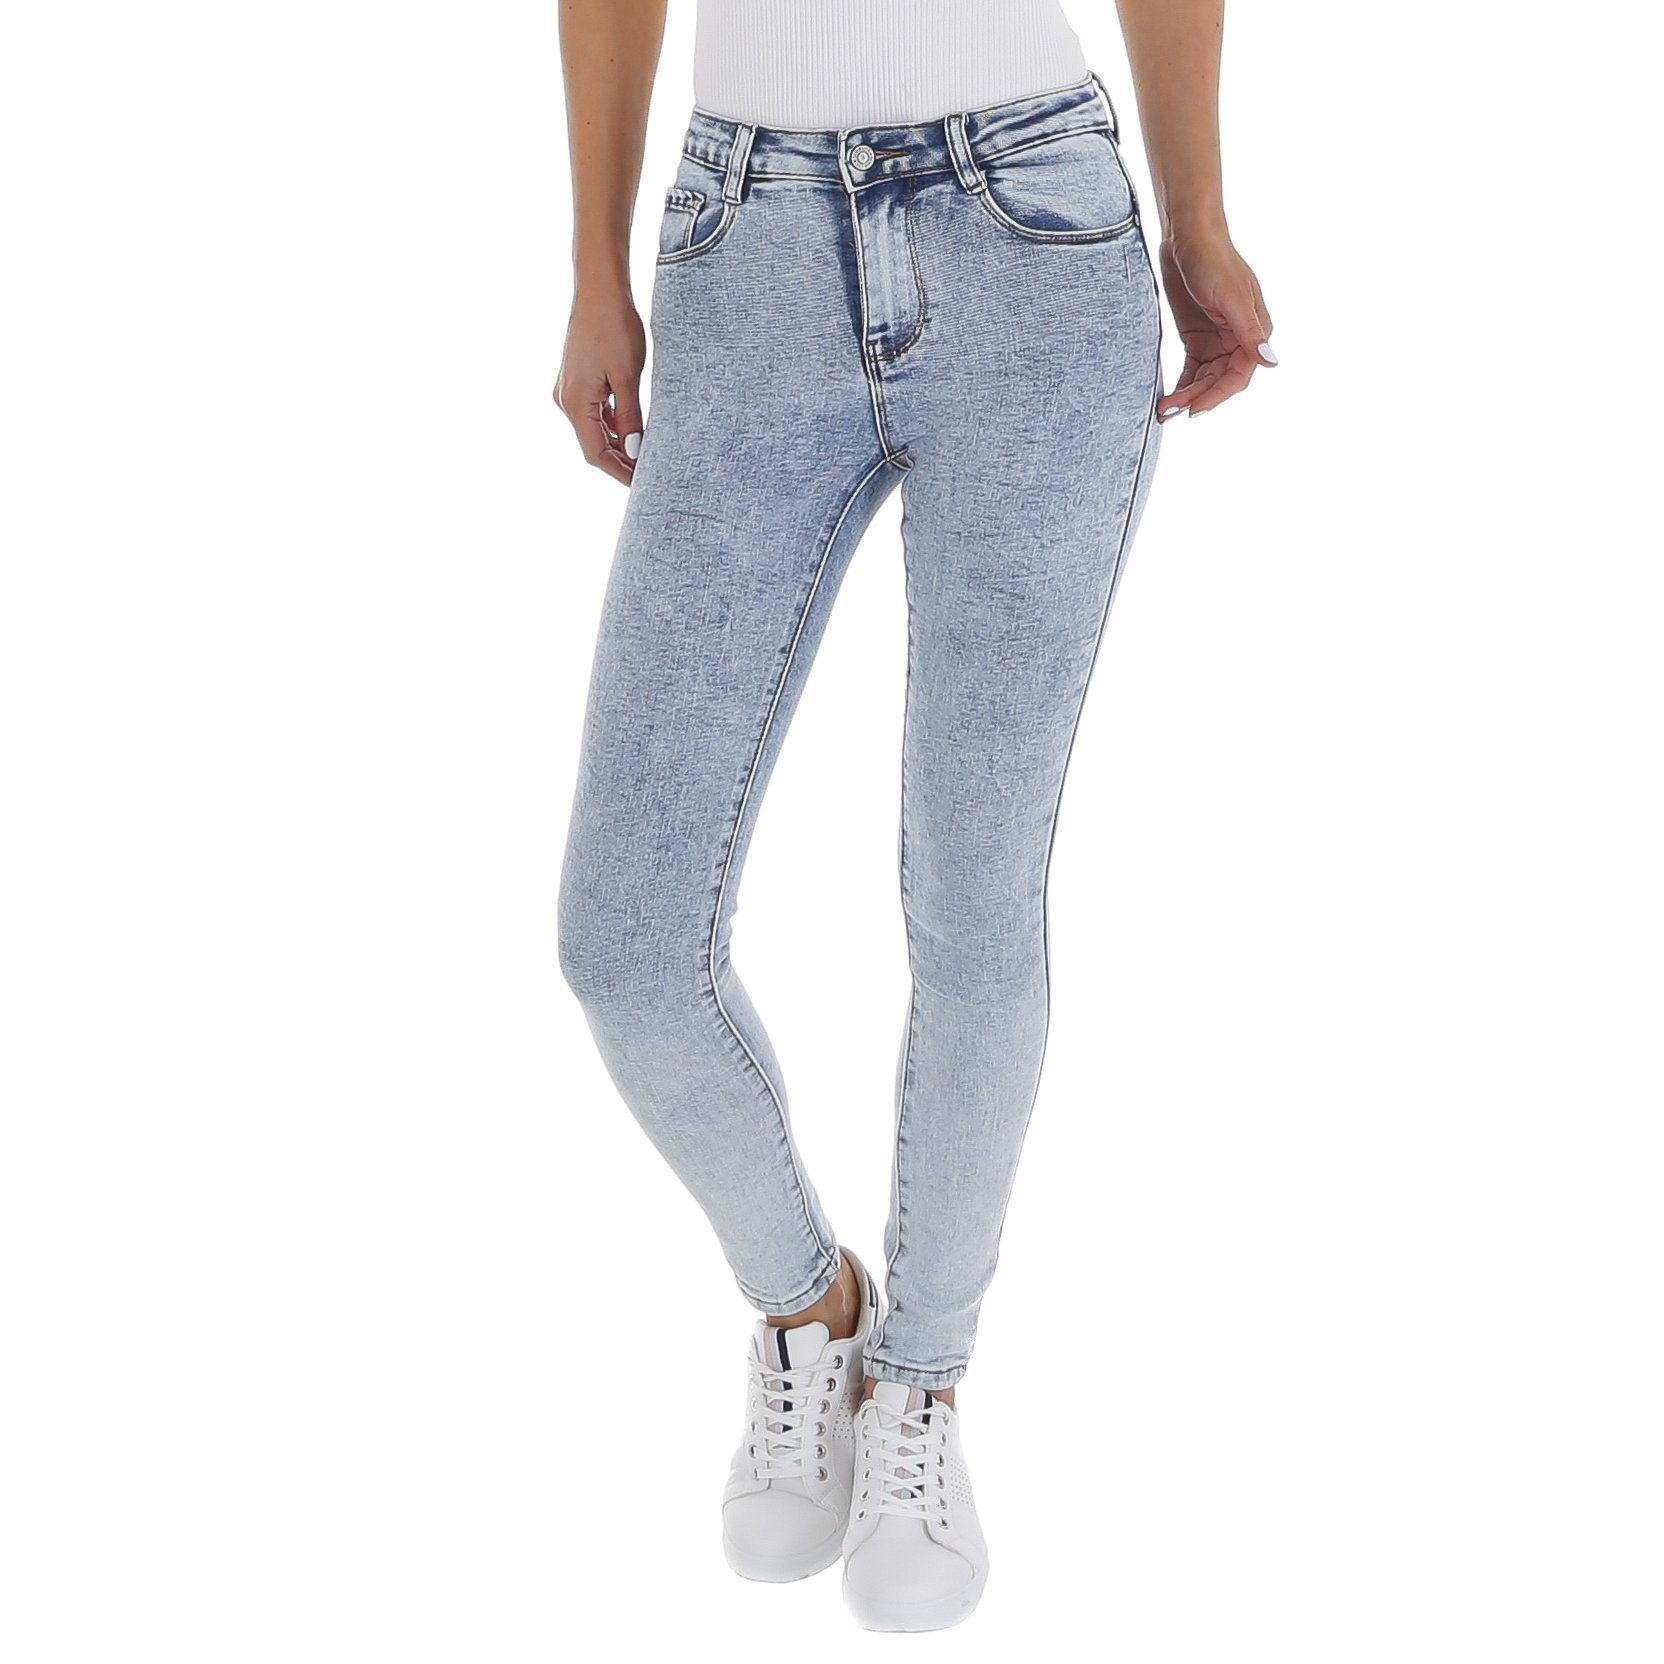 Damen Jeans Ital-Design Skinny-fit-Jeans Damen Freizeit Used-Look Stretch Skinny Jeans in Hellblau